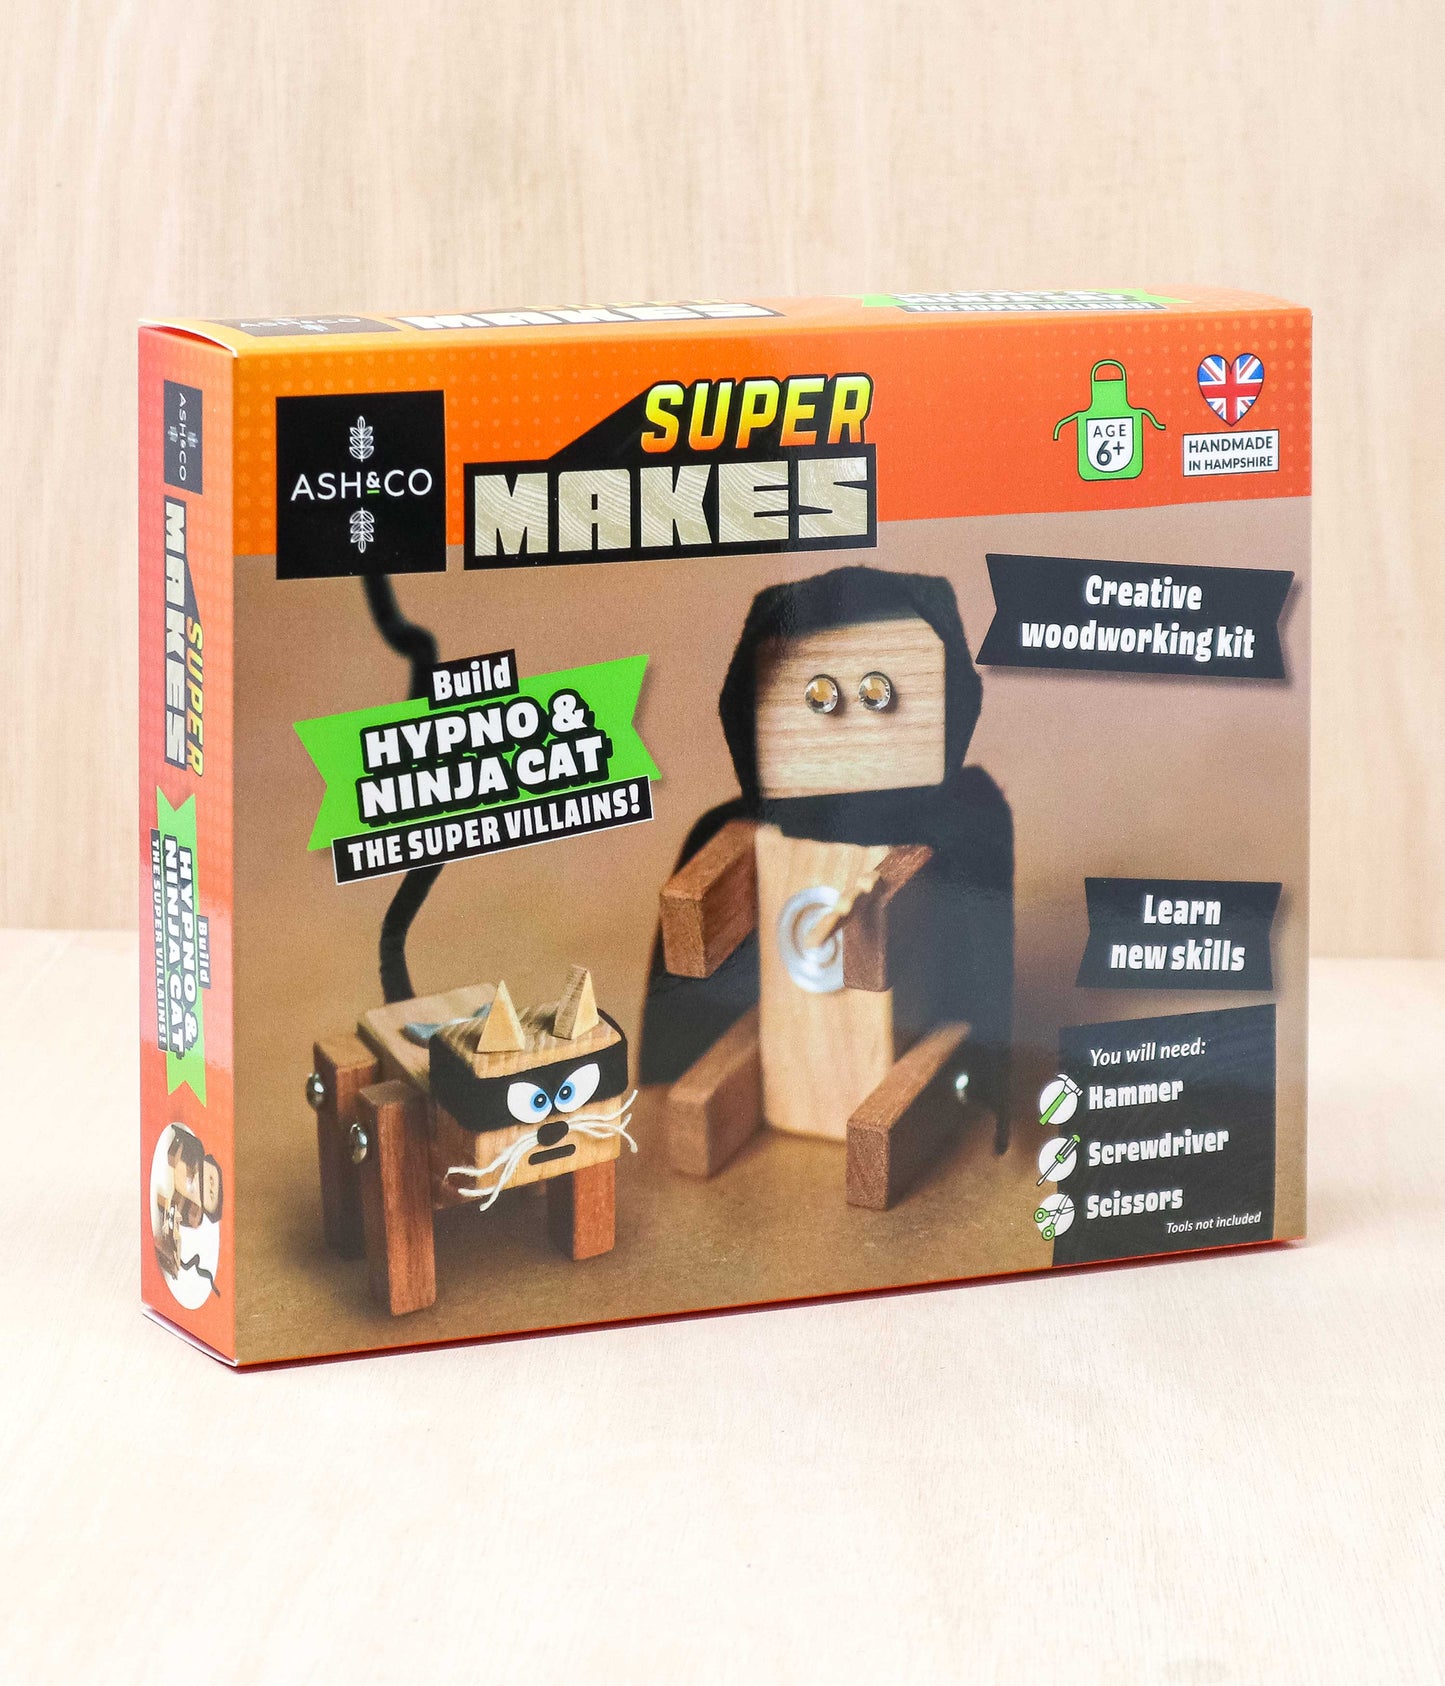 Build Hypno & Ninja Cat the Super Villains!